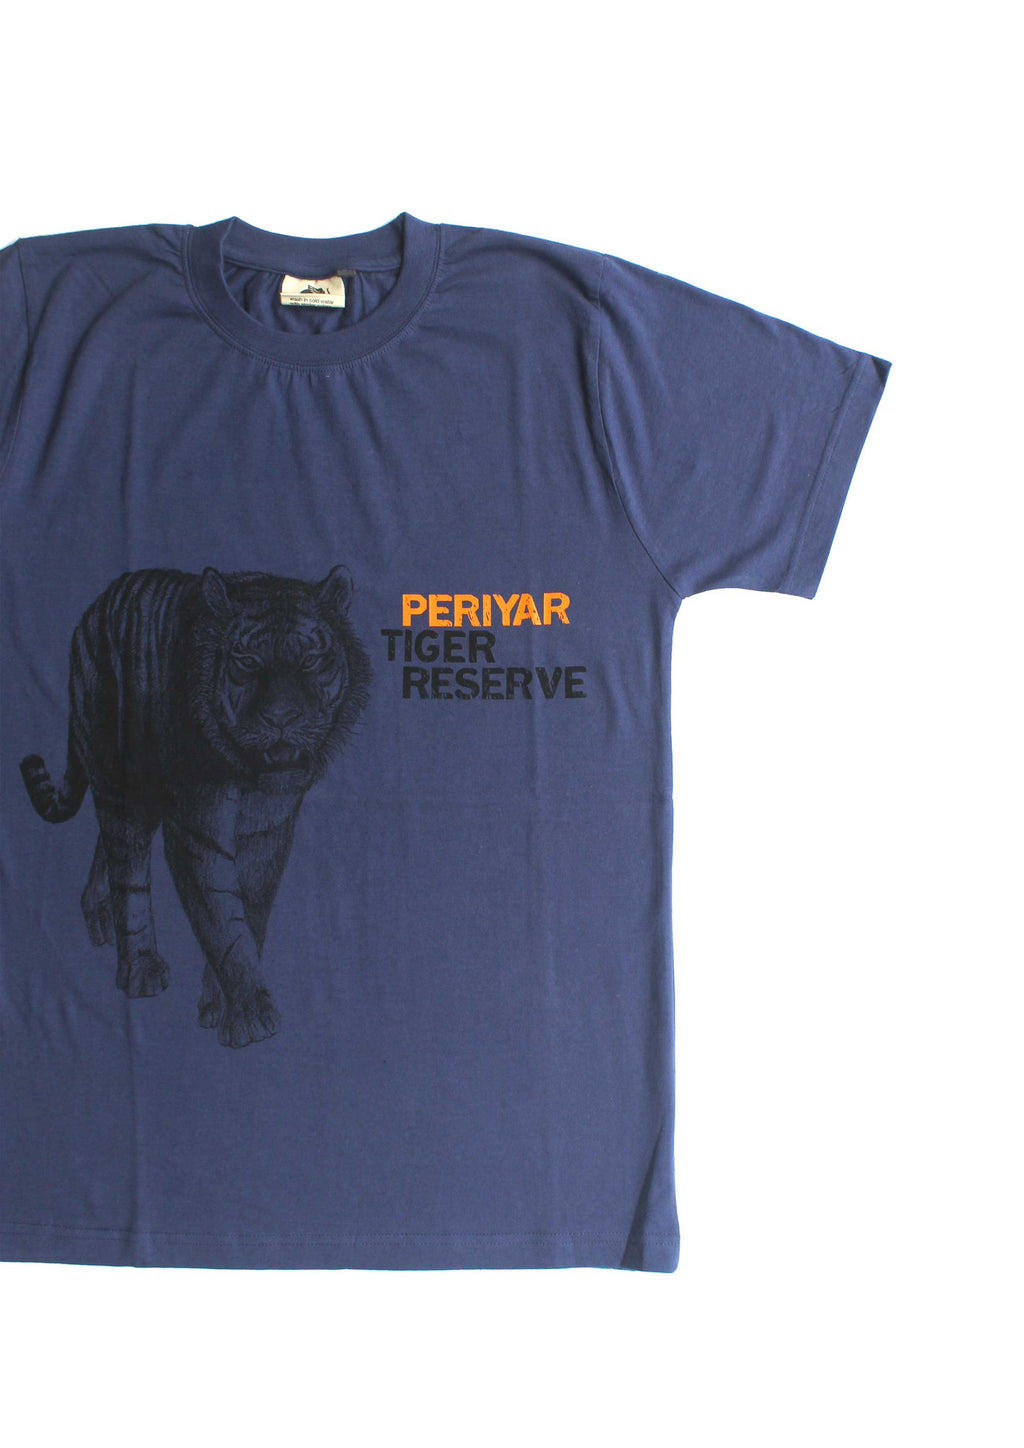 Periyar Tiger Reserve T-shirt